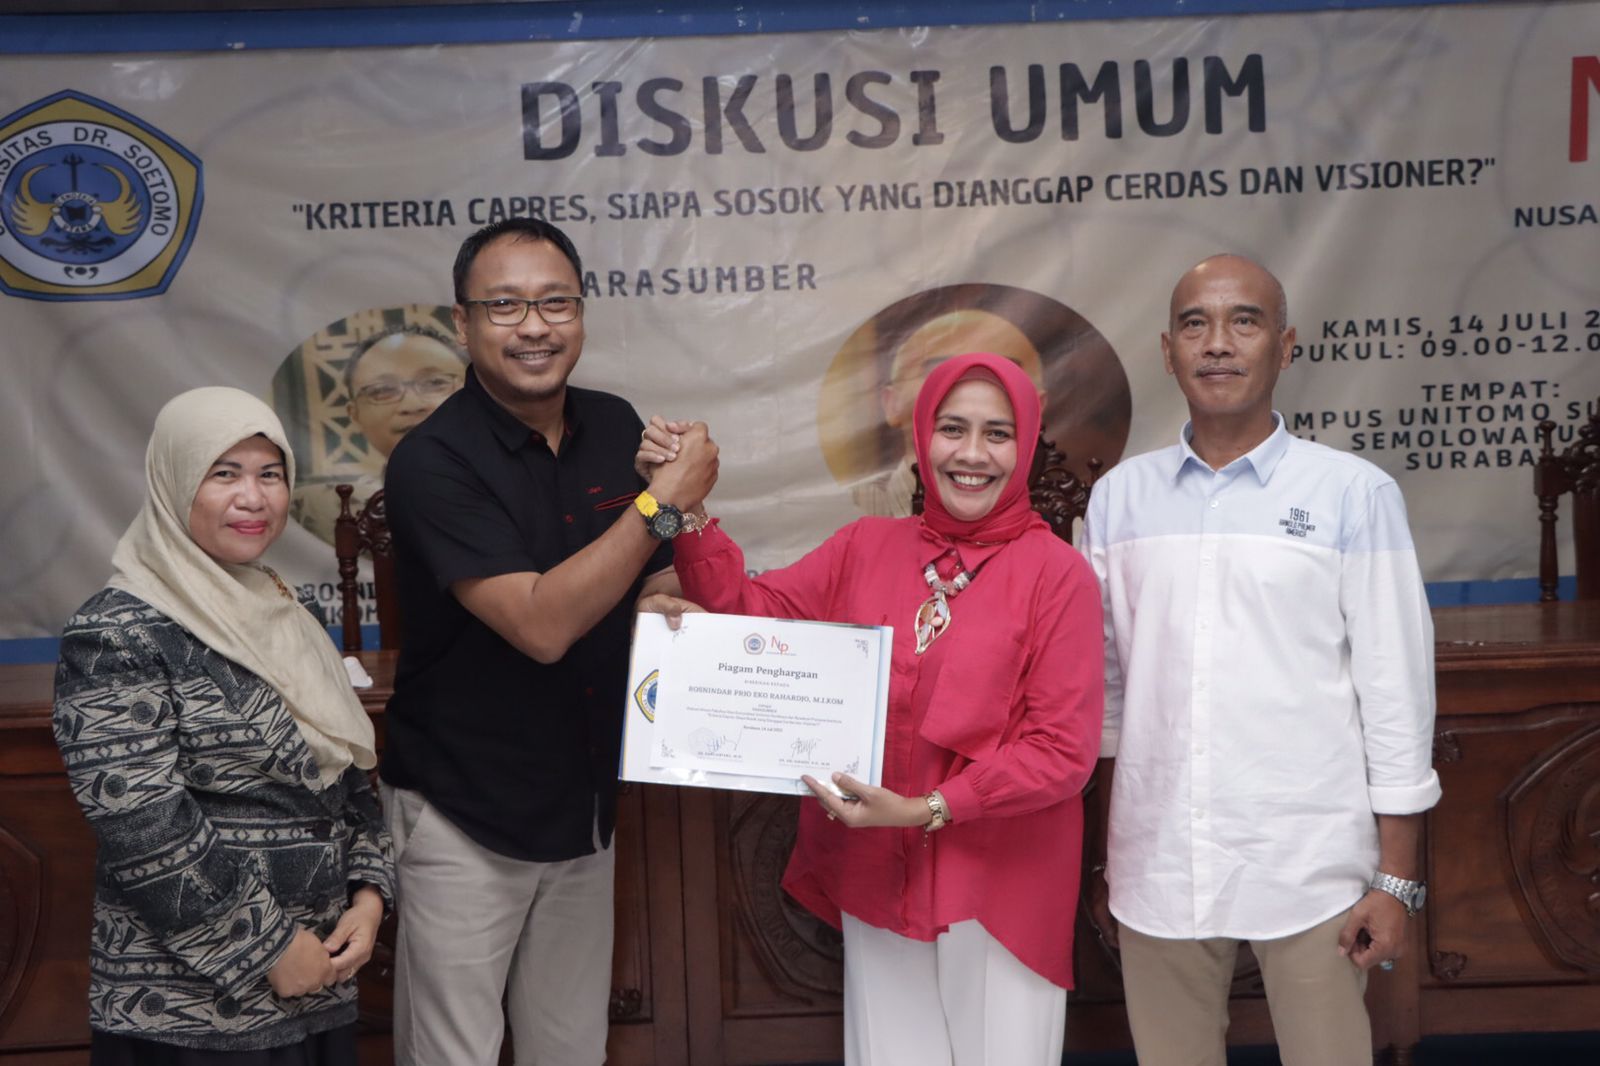 Fakultas Ilmu Komunikasi Universitas Dr. Soetomo Surabaya bekerja sama dengan Nusakom Pratama Institute menggelar diskusi dengan tema 'Kriteria Capres, Siapa Sosok yang Dianggap Cerdas dan Visioner?". 